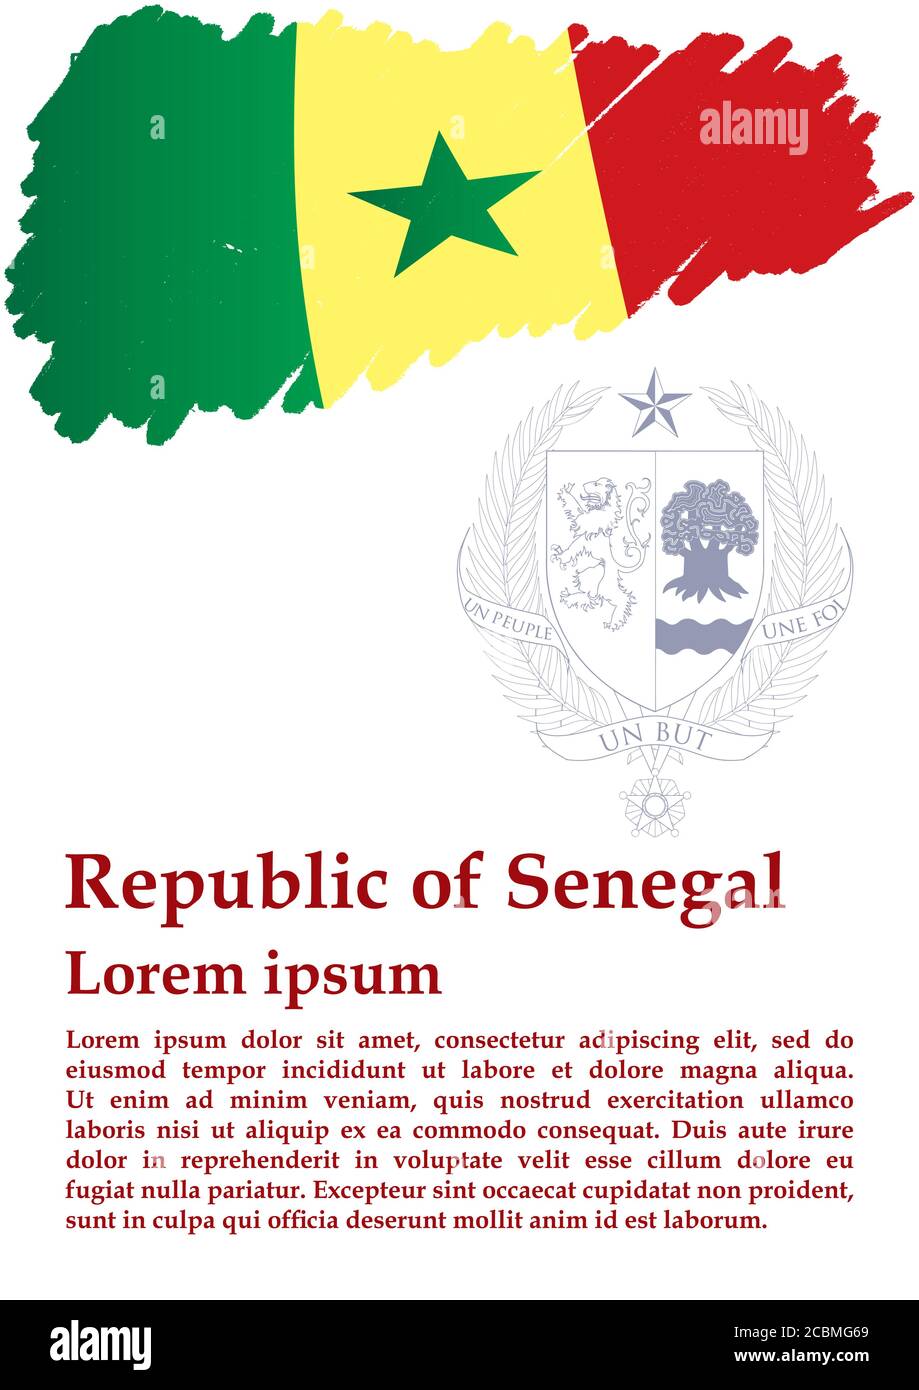 Drapeau du Sénégal, République du Sénégal. Modèle pour la conception de prix, un document officiel avec le drapeau du Sénégal. Illustration vectorielle colorée et lumineuse. Illustration de Vecteur